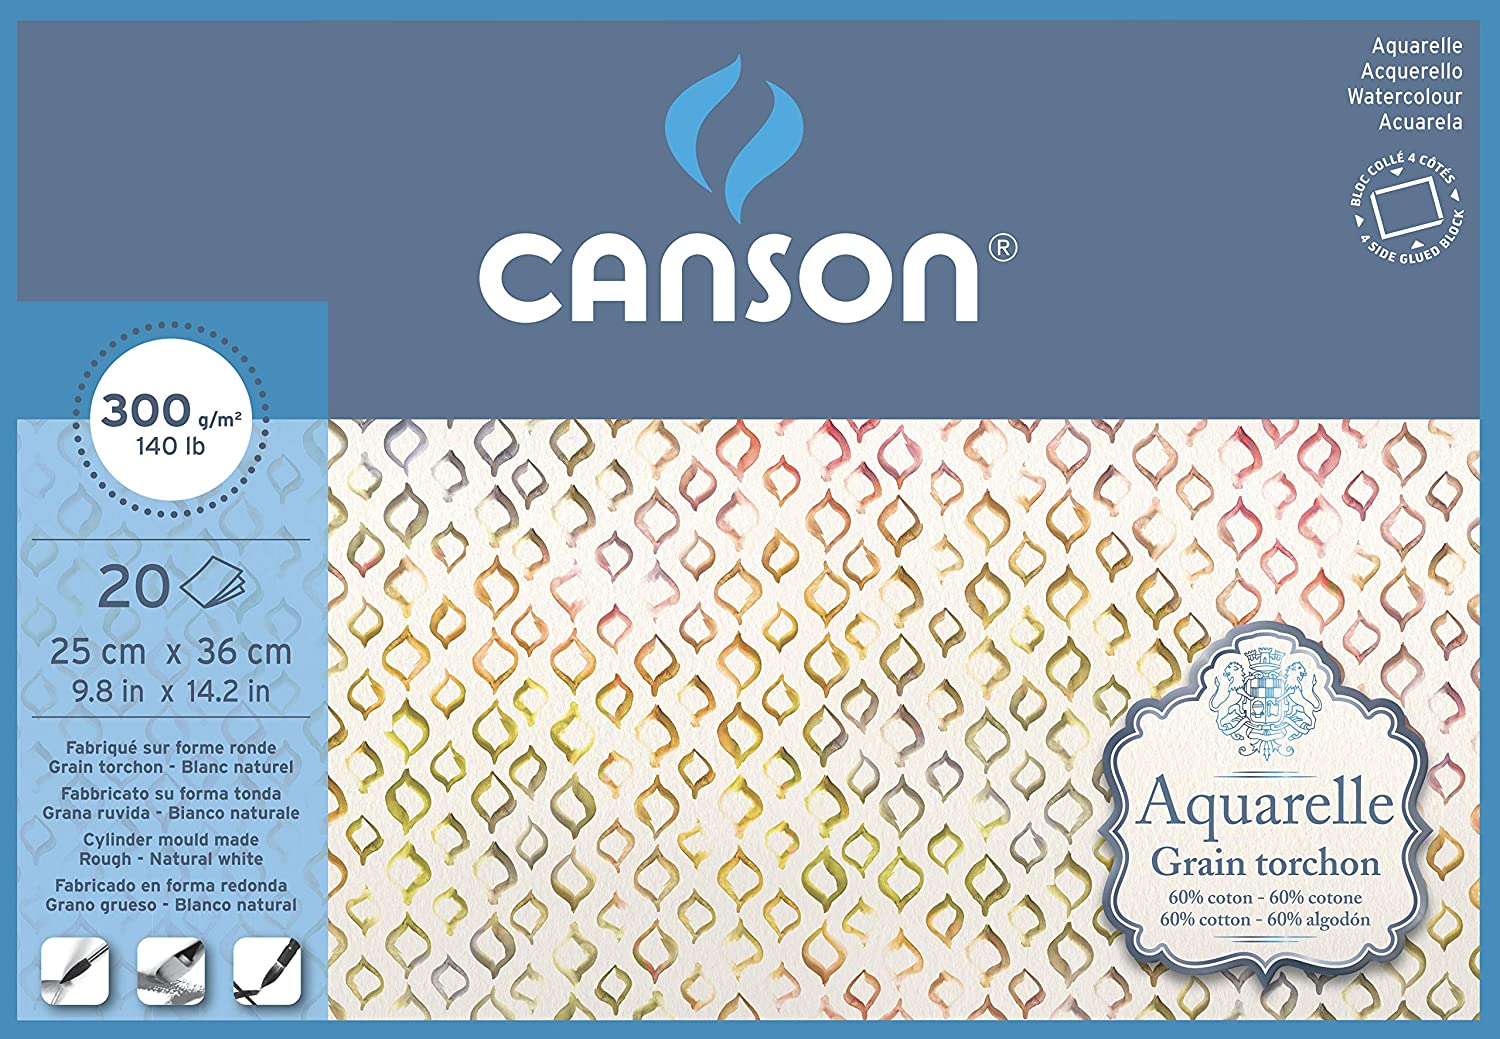 Блок для акварели CANSON 300г/кв.м 250х360мм крупное зерно 20л. склейка по 5 359.00 руб от Canson